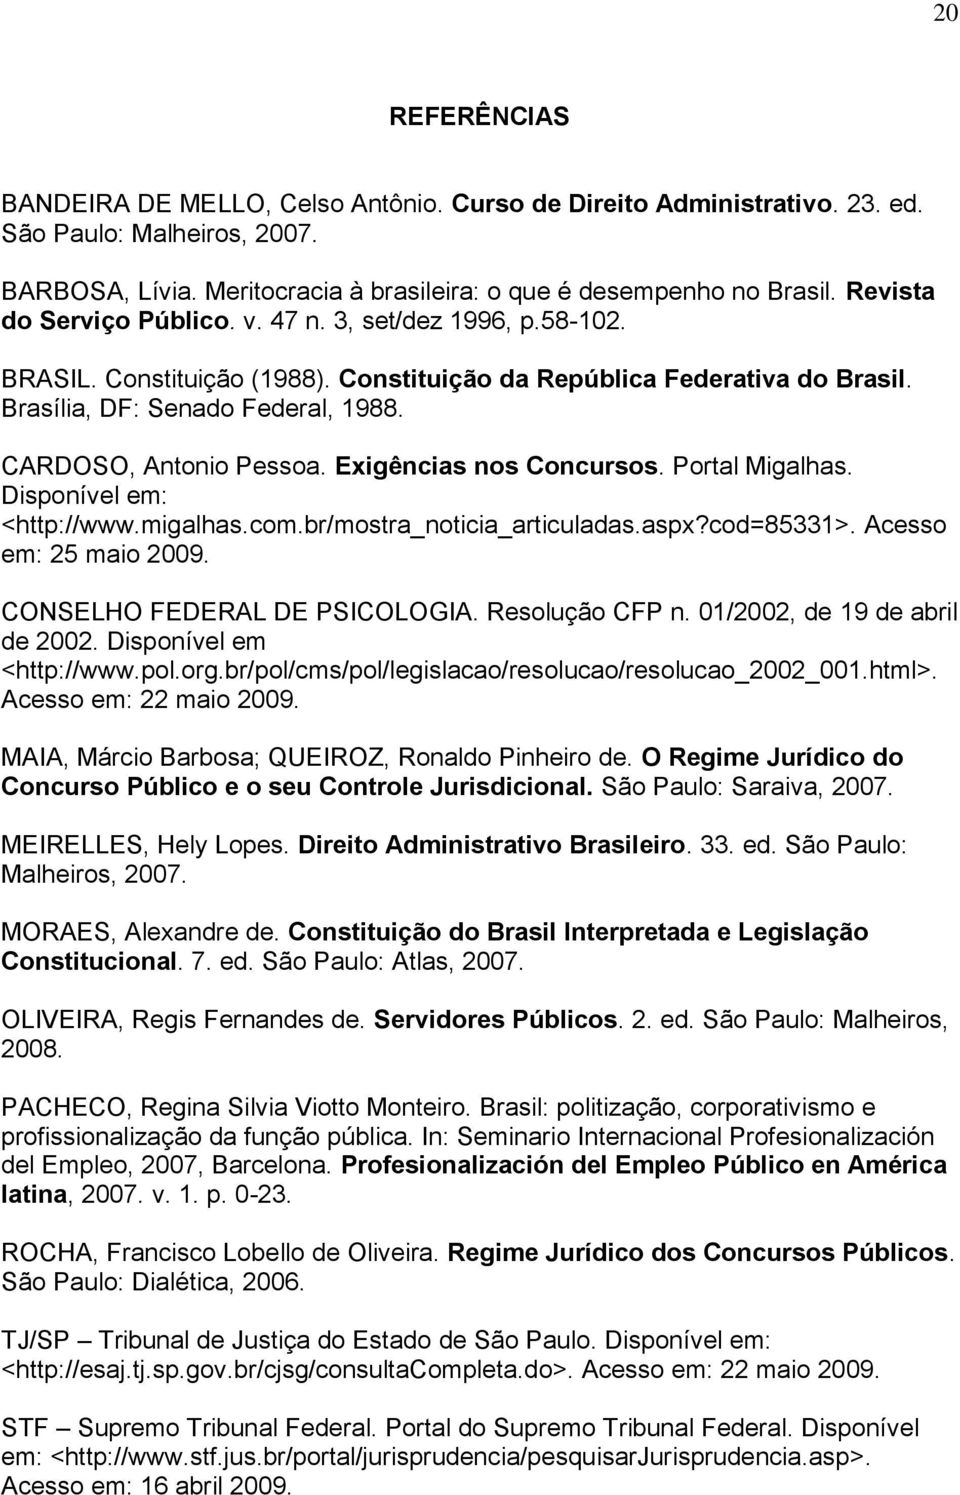 CARDOSO, Antonio Pessoa. Exigências nos Concursos. Portal Migalhas. Disponível em: <http://www.migalhas.com.br/mostra_noticia_articuladas.aspx?cod=85331>. Acesso em: 25 maio 2009.